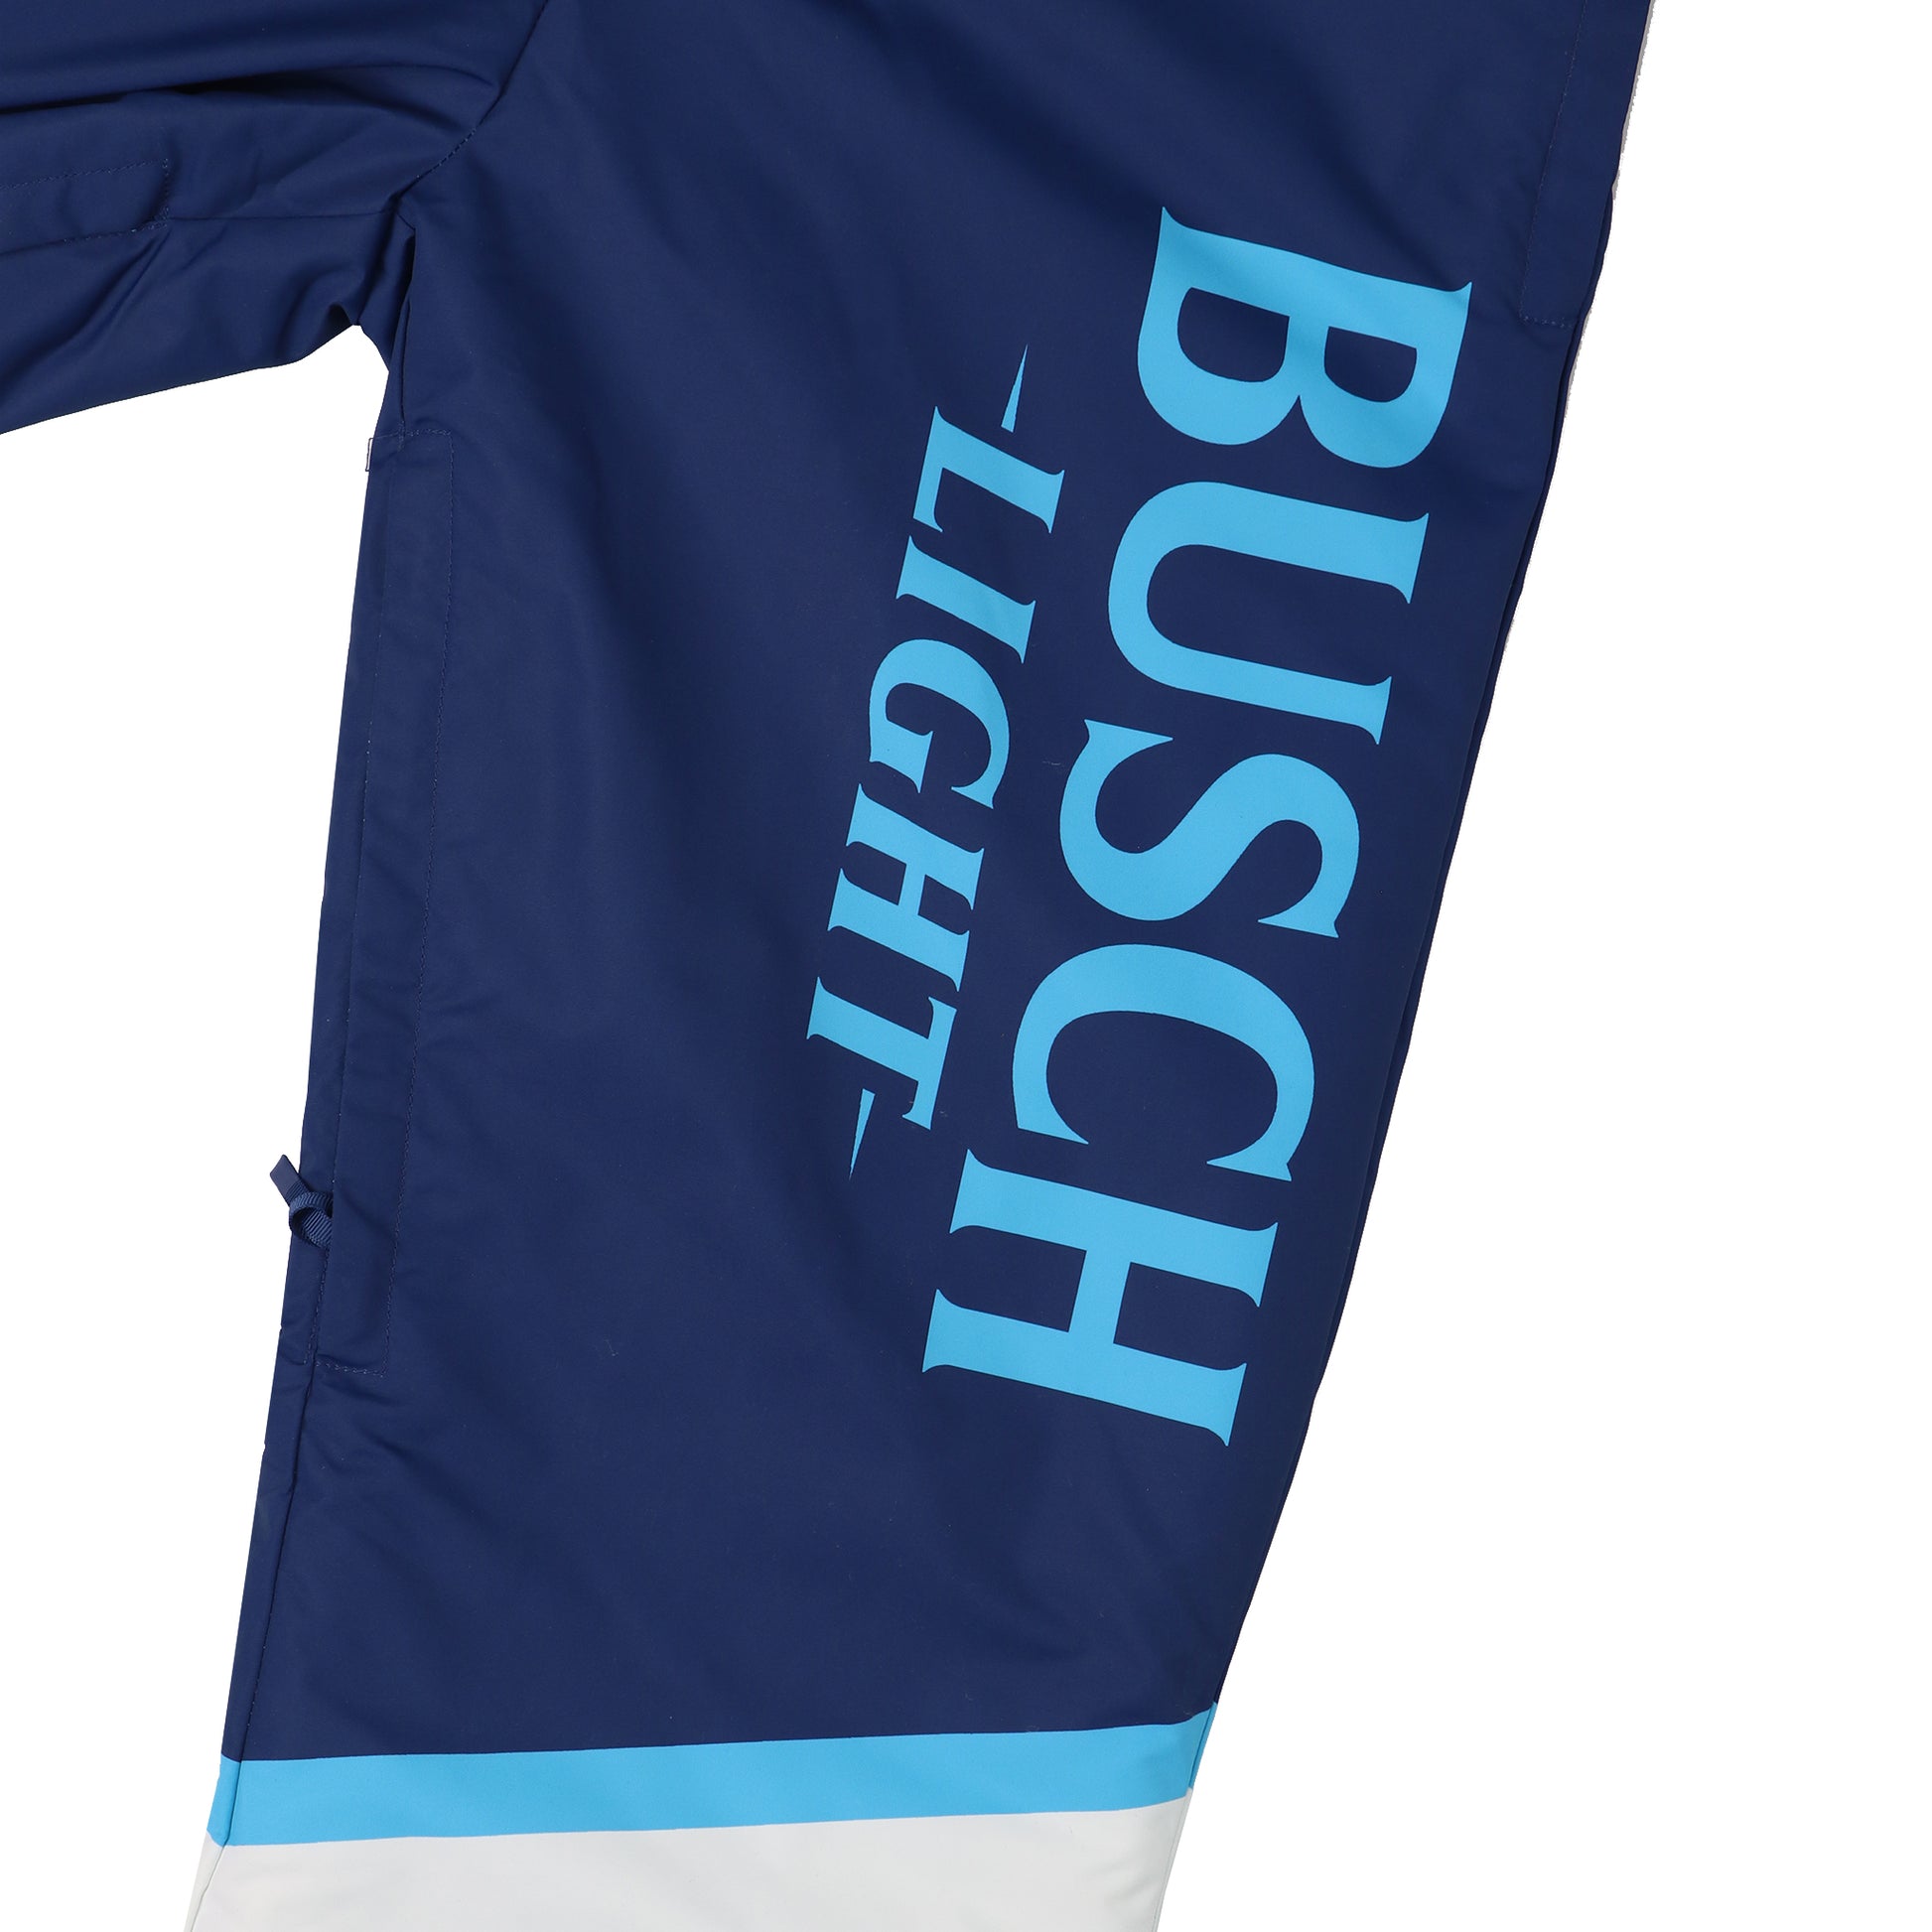 Close up of "Busch Light" written on left leg